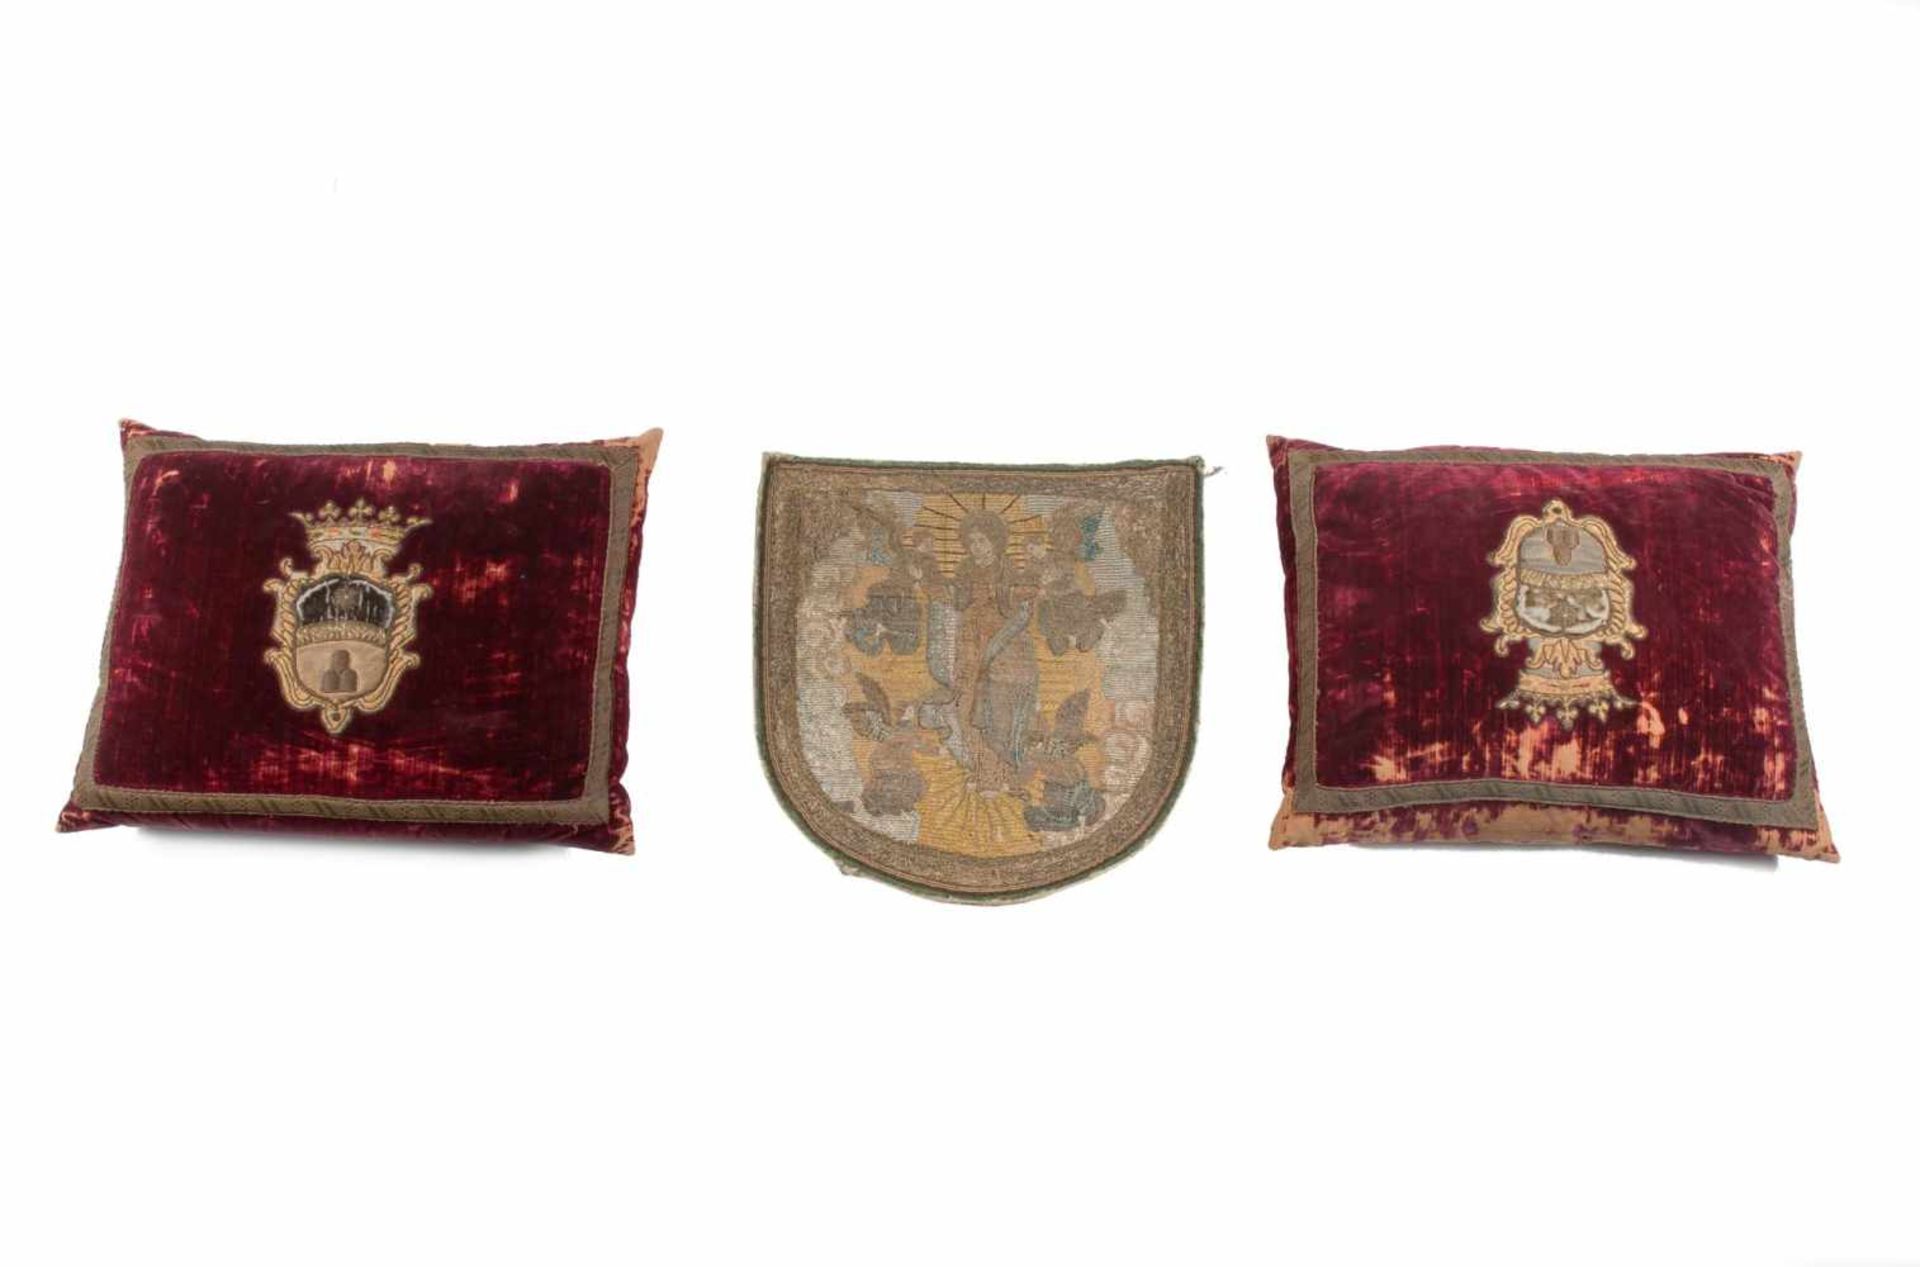 Twee kussens met heraldisch wapen. Toegevoegd een processievaandel met decor van een heilige en